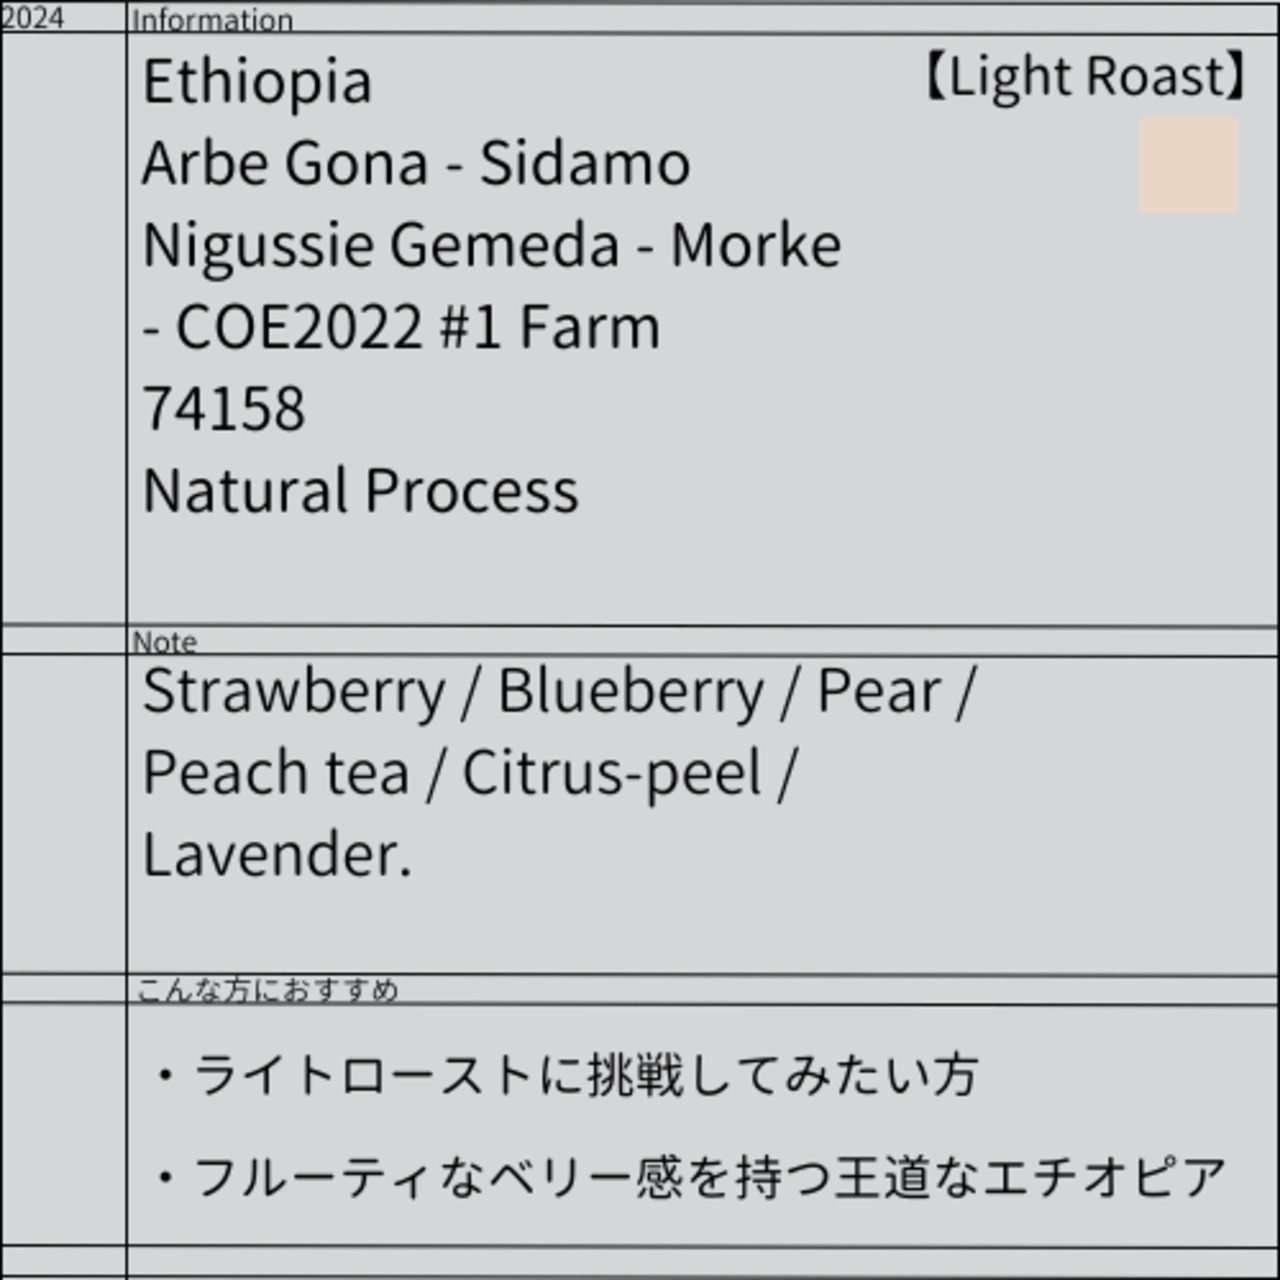 Ethiopia-Nigussie Gemeda - Morke/COE2020 #1 Producer/74158/Natural/Light